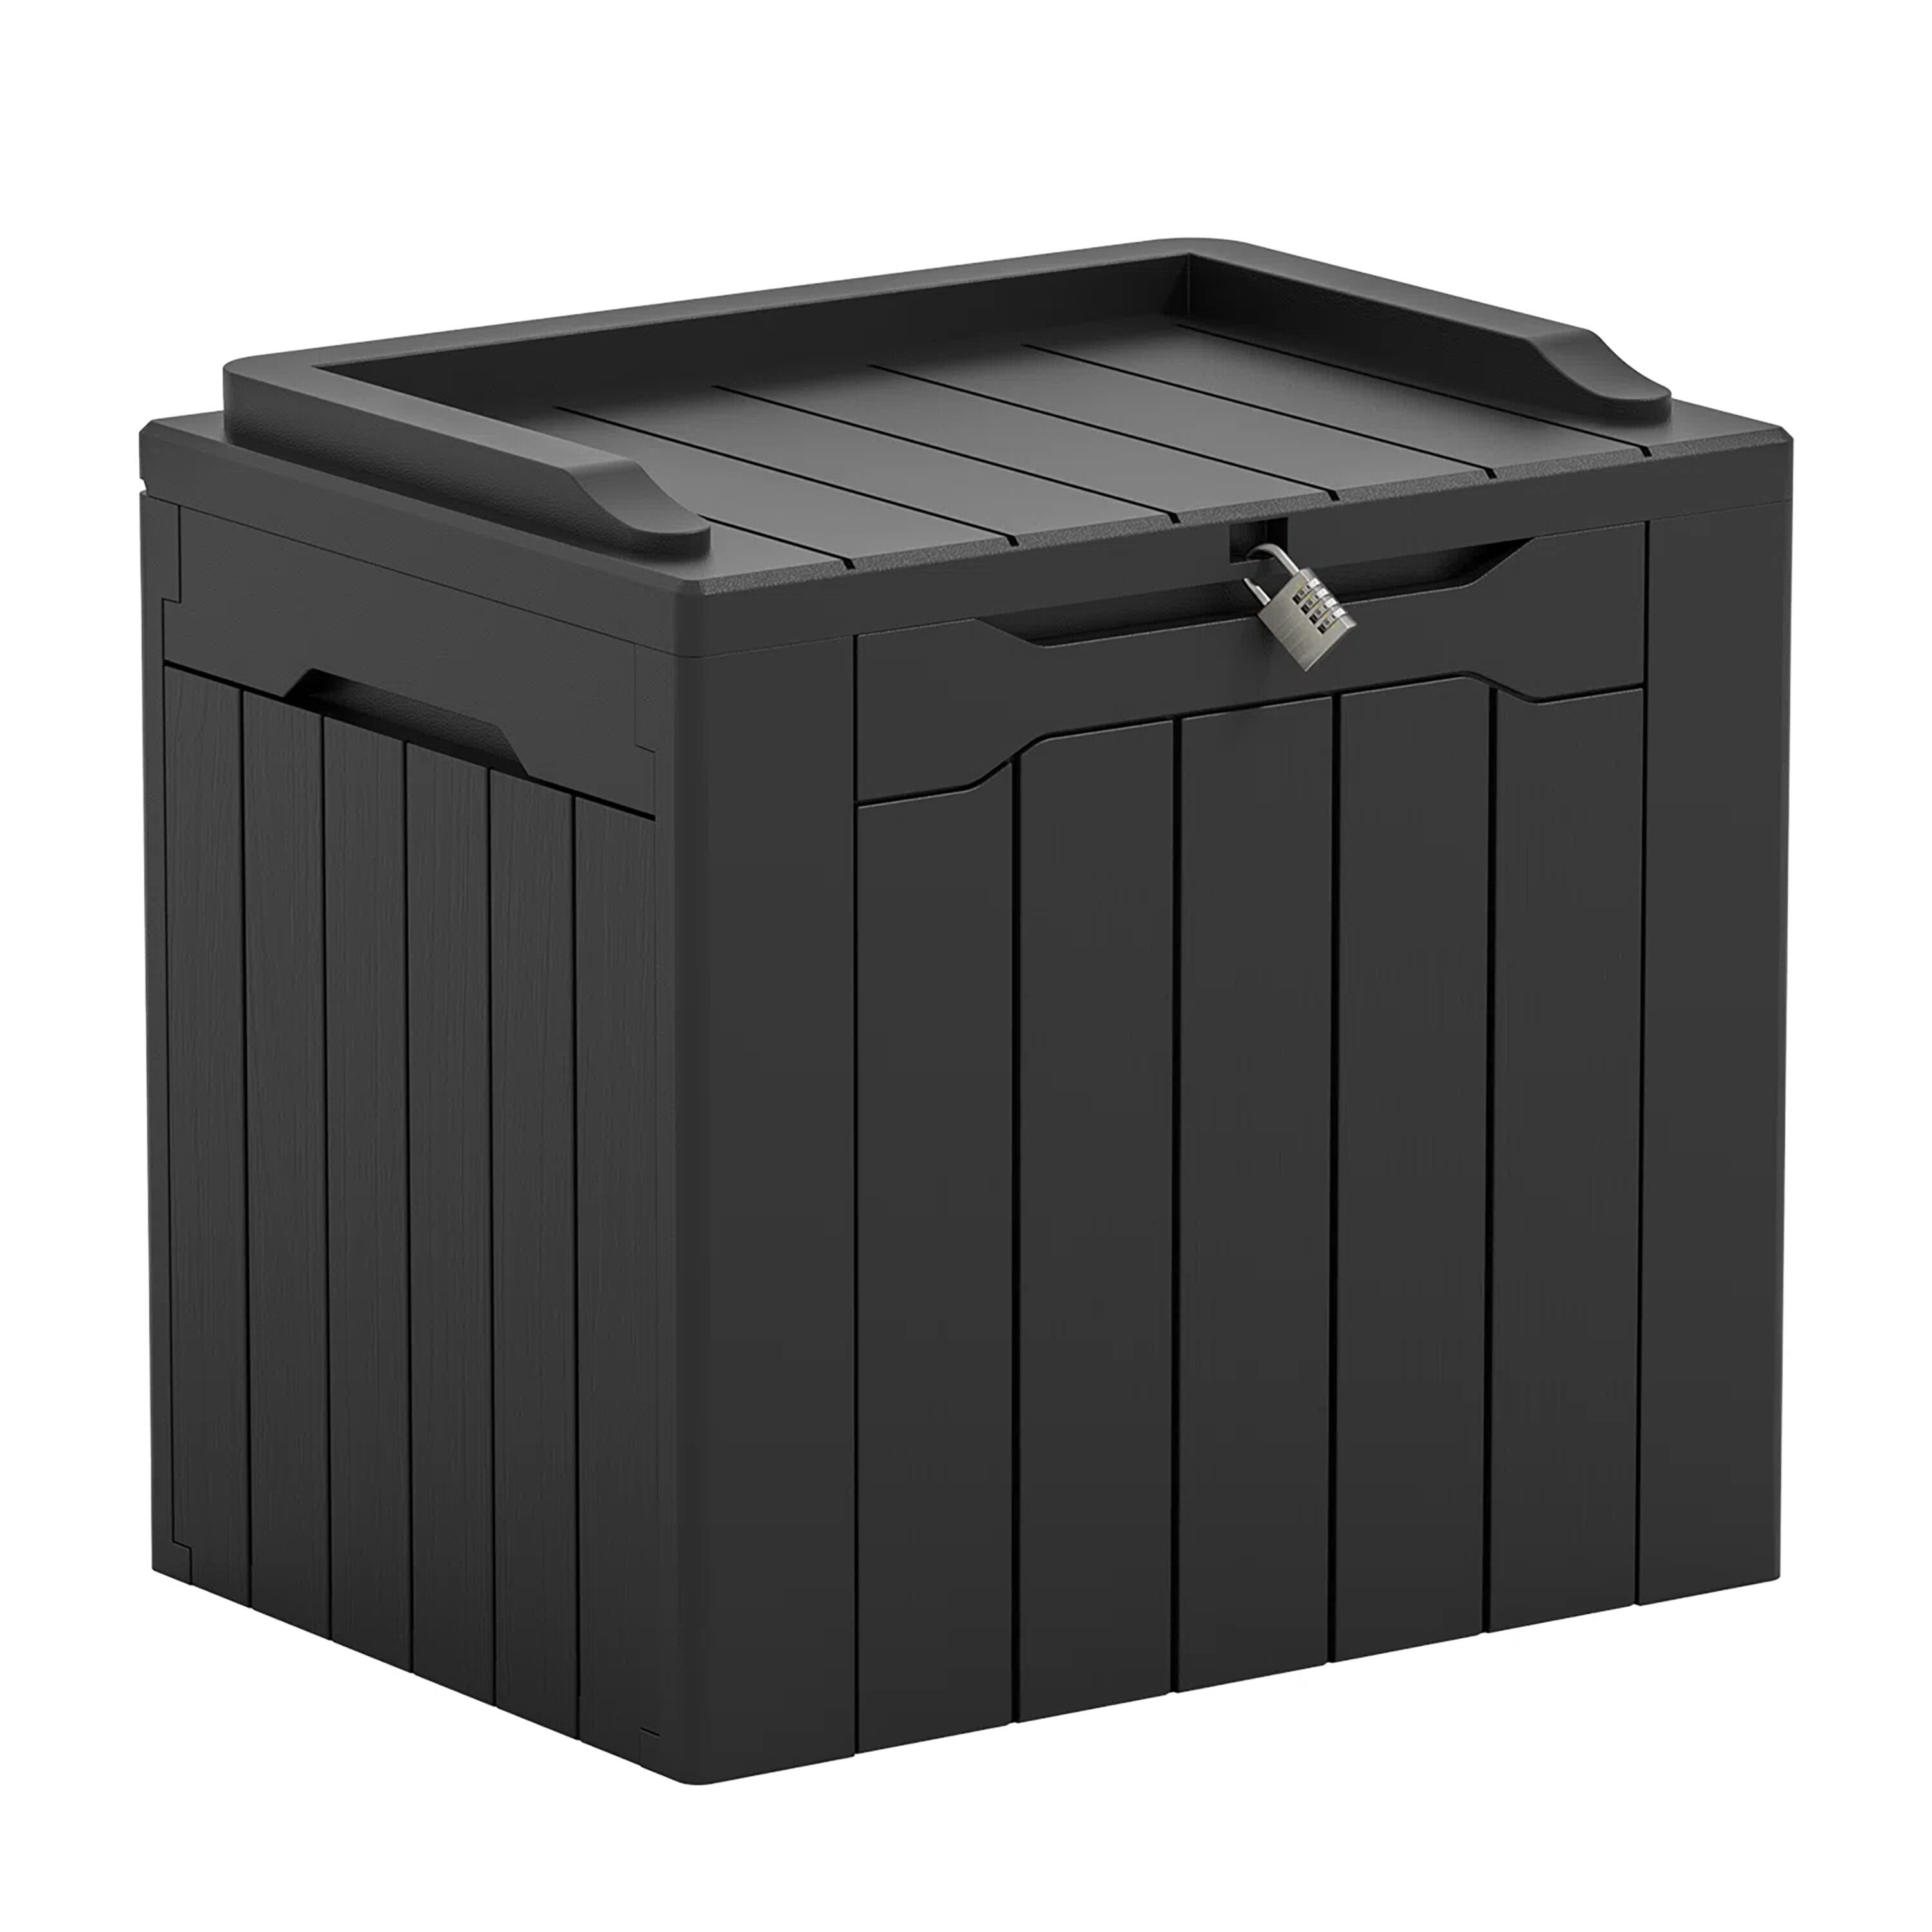 Vineego Deck Box 22.04-in L x 16.34-in 32-Gallons Black Plastic Deck Box | LS-PSB22-0063-0